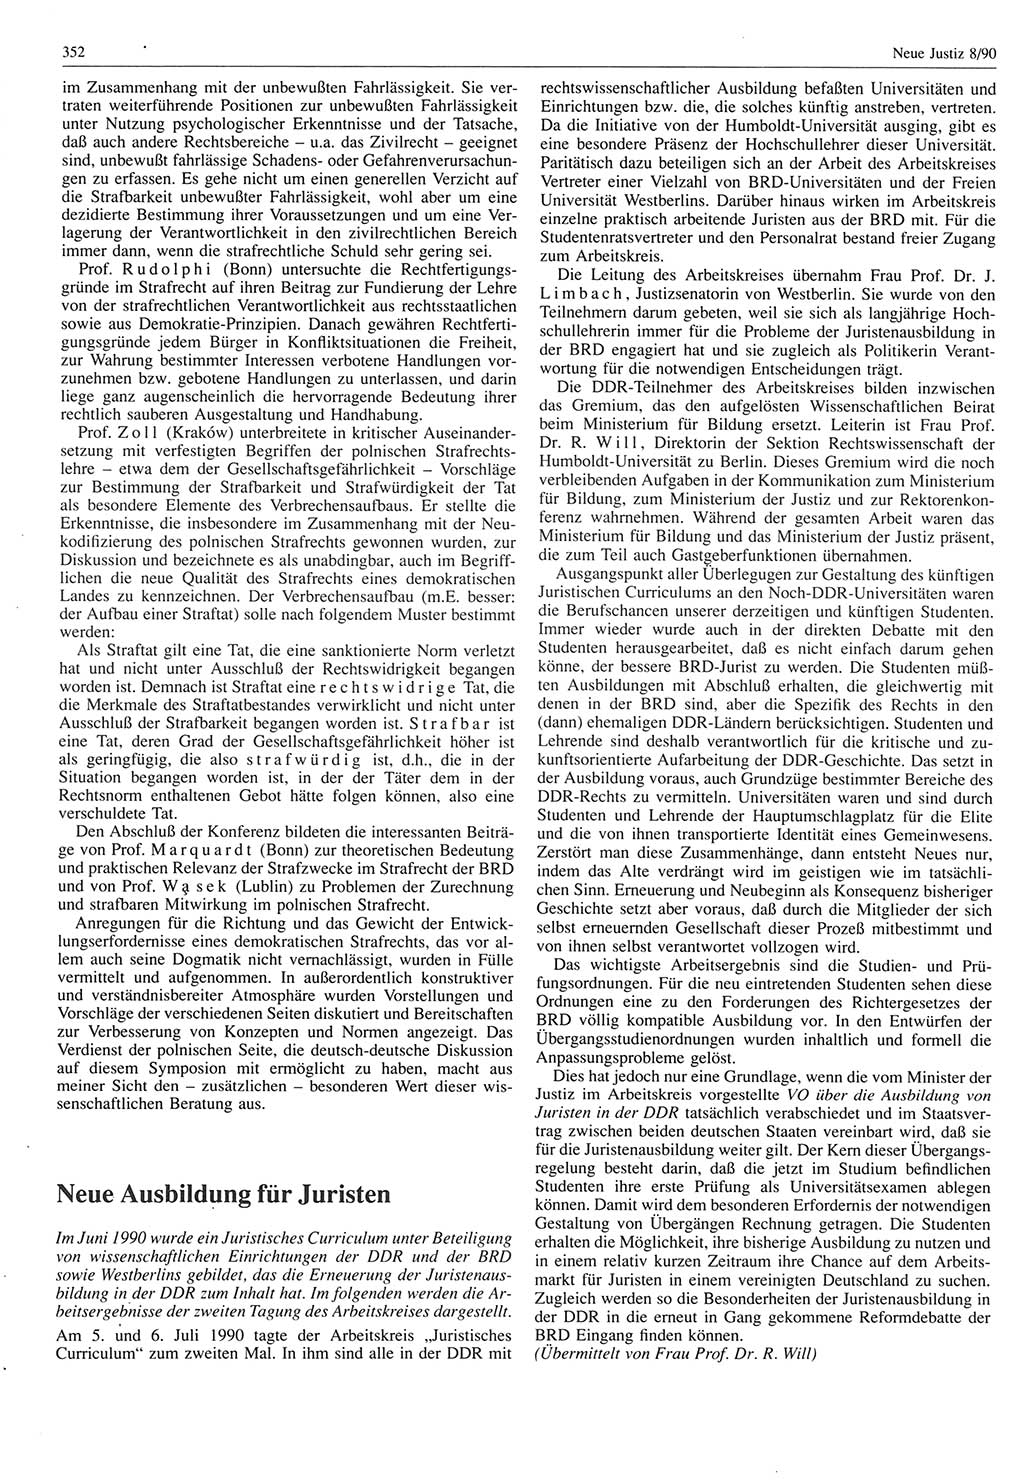 Neue Justiz (NJ), Zeitschrift für Rechtsetzung und Rechtsanwendung [Deutsche Demokratische Republik (DDR)], 44. Jahrgang 1990, Seite 352 (NJ DDR 1990, S. 352)